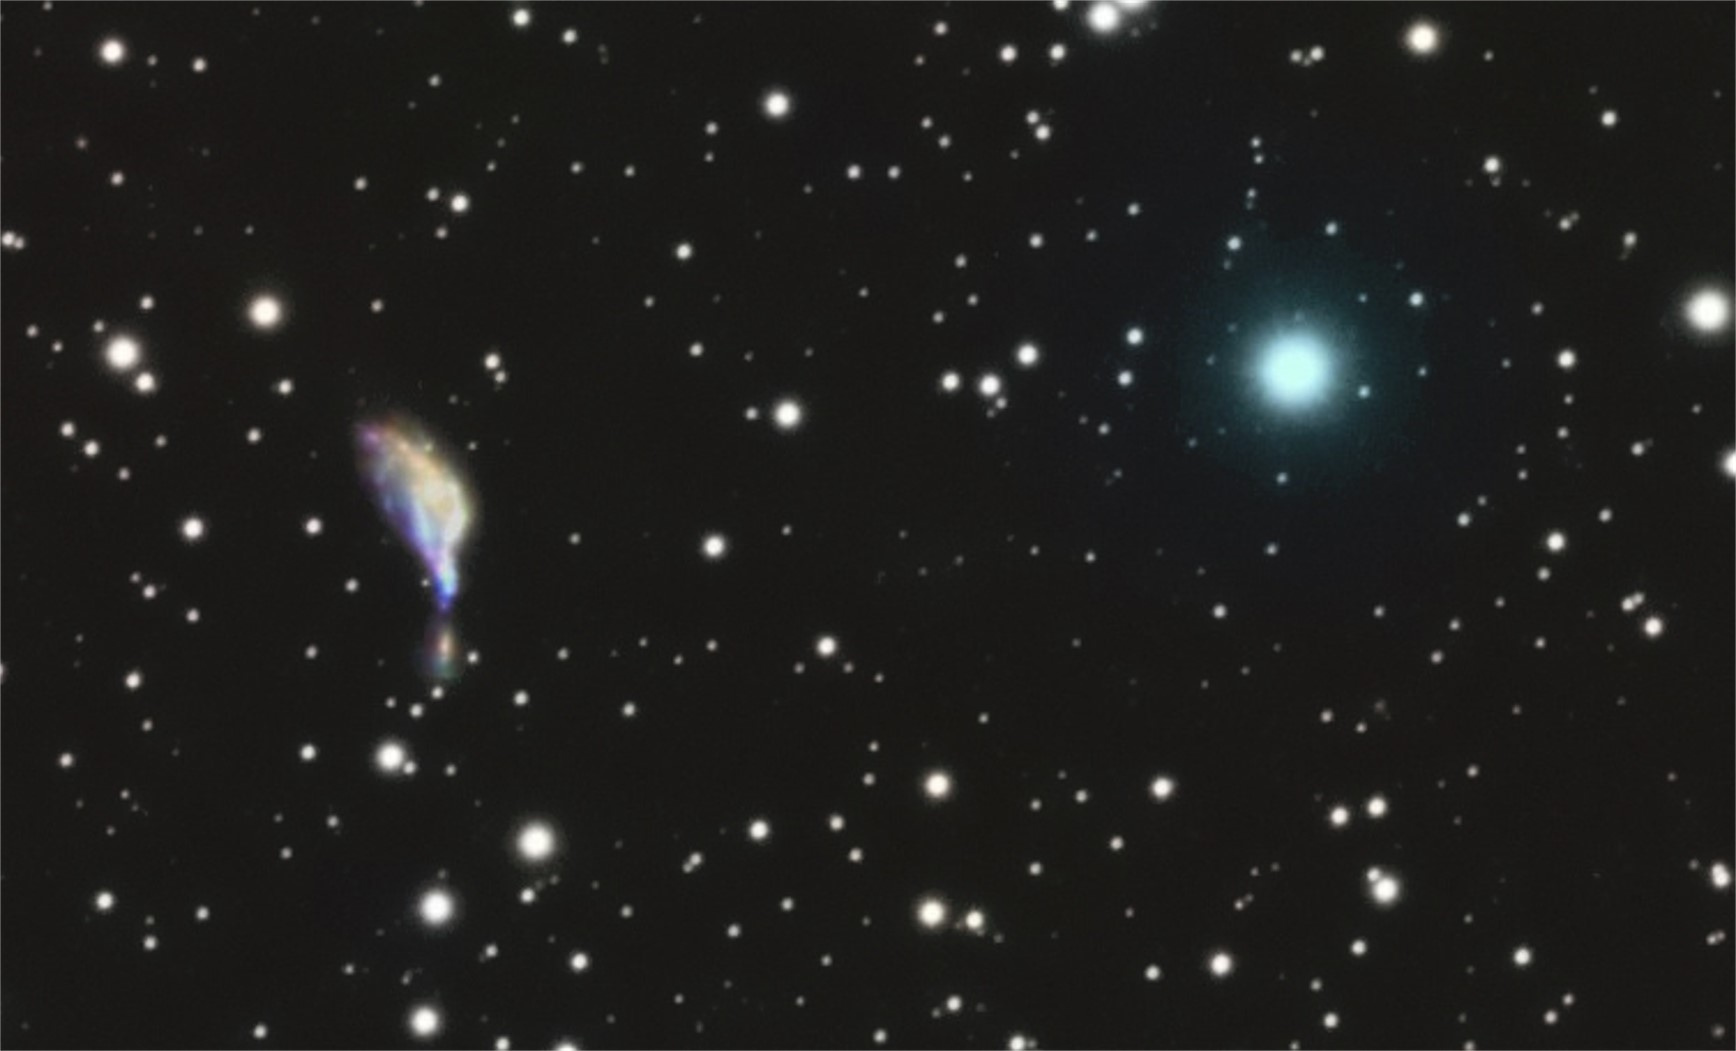 5b1295f623f00_NGC6745crop.jpg.a1a1dc955bd502dff46cdf016e694c88.jpg